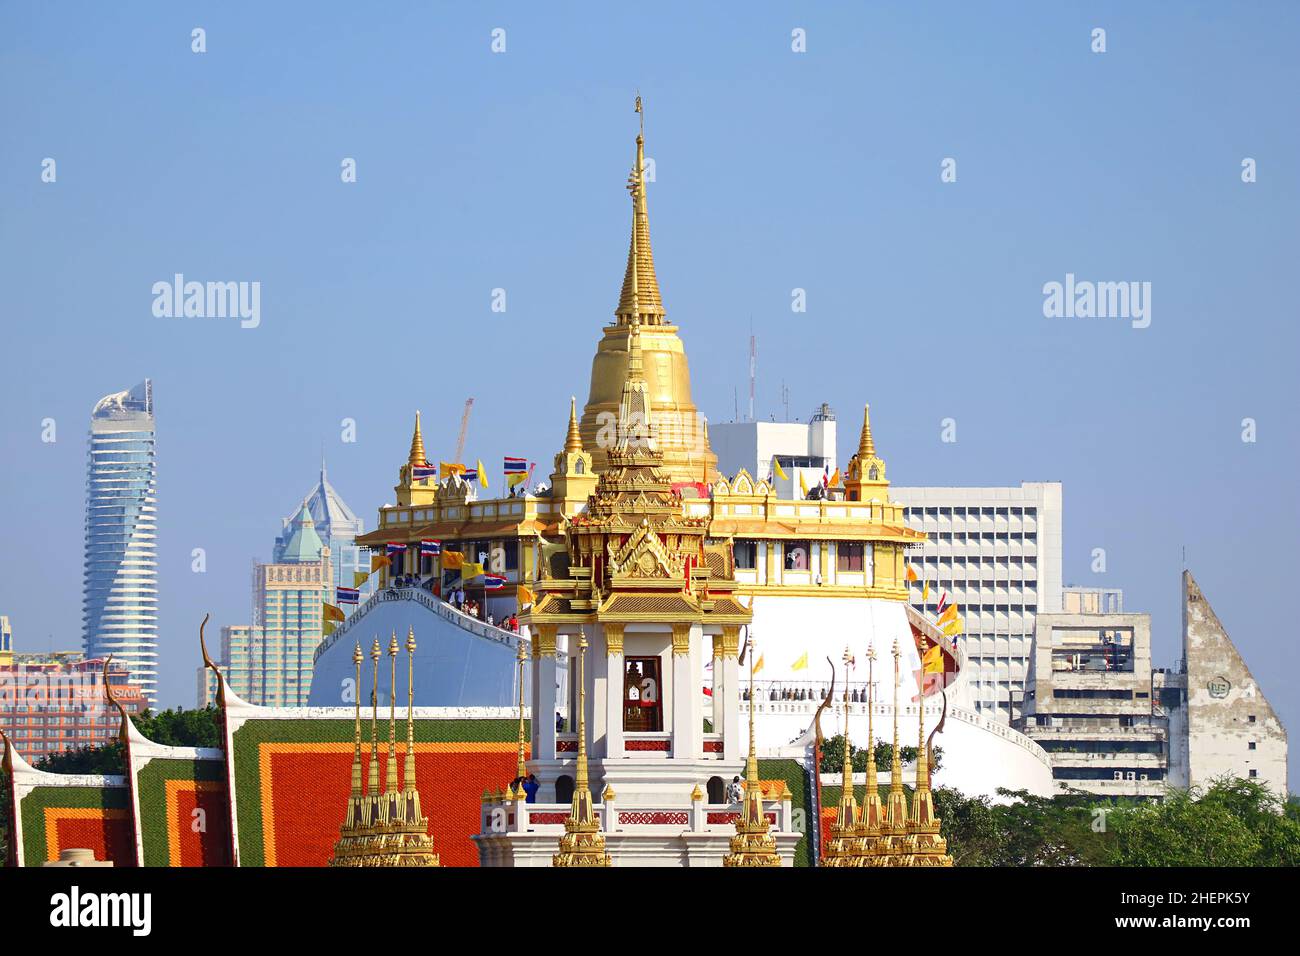 Vue imprenable sur Phu Khao Thong (Mont d'or) du temple de Wat Saket avec les pointes de Loha Prasat (Château de fer) du temple de Wat Ratchanatdaram Banque D'Images